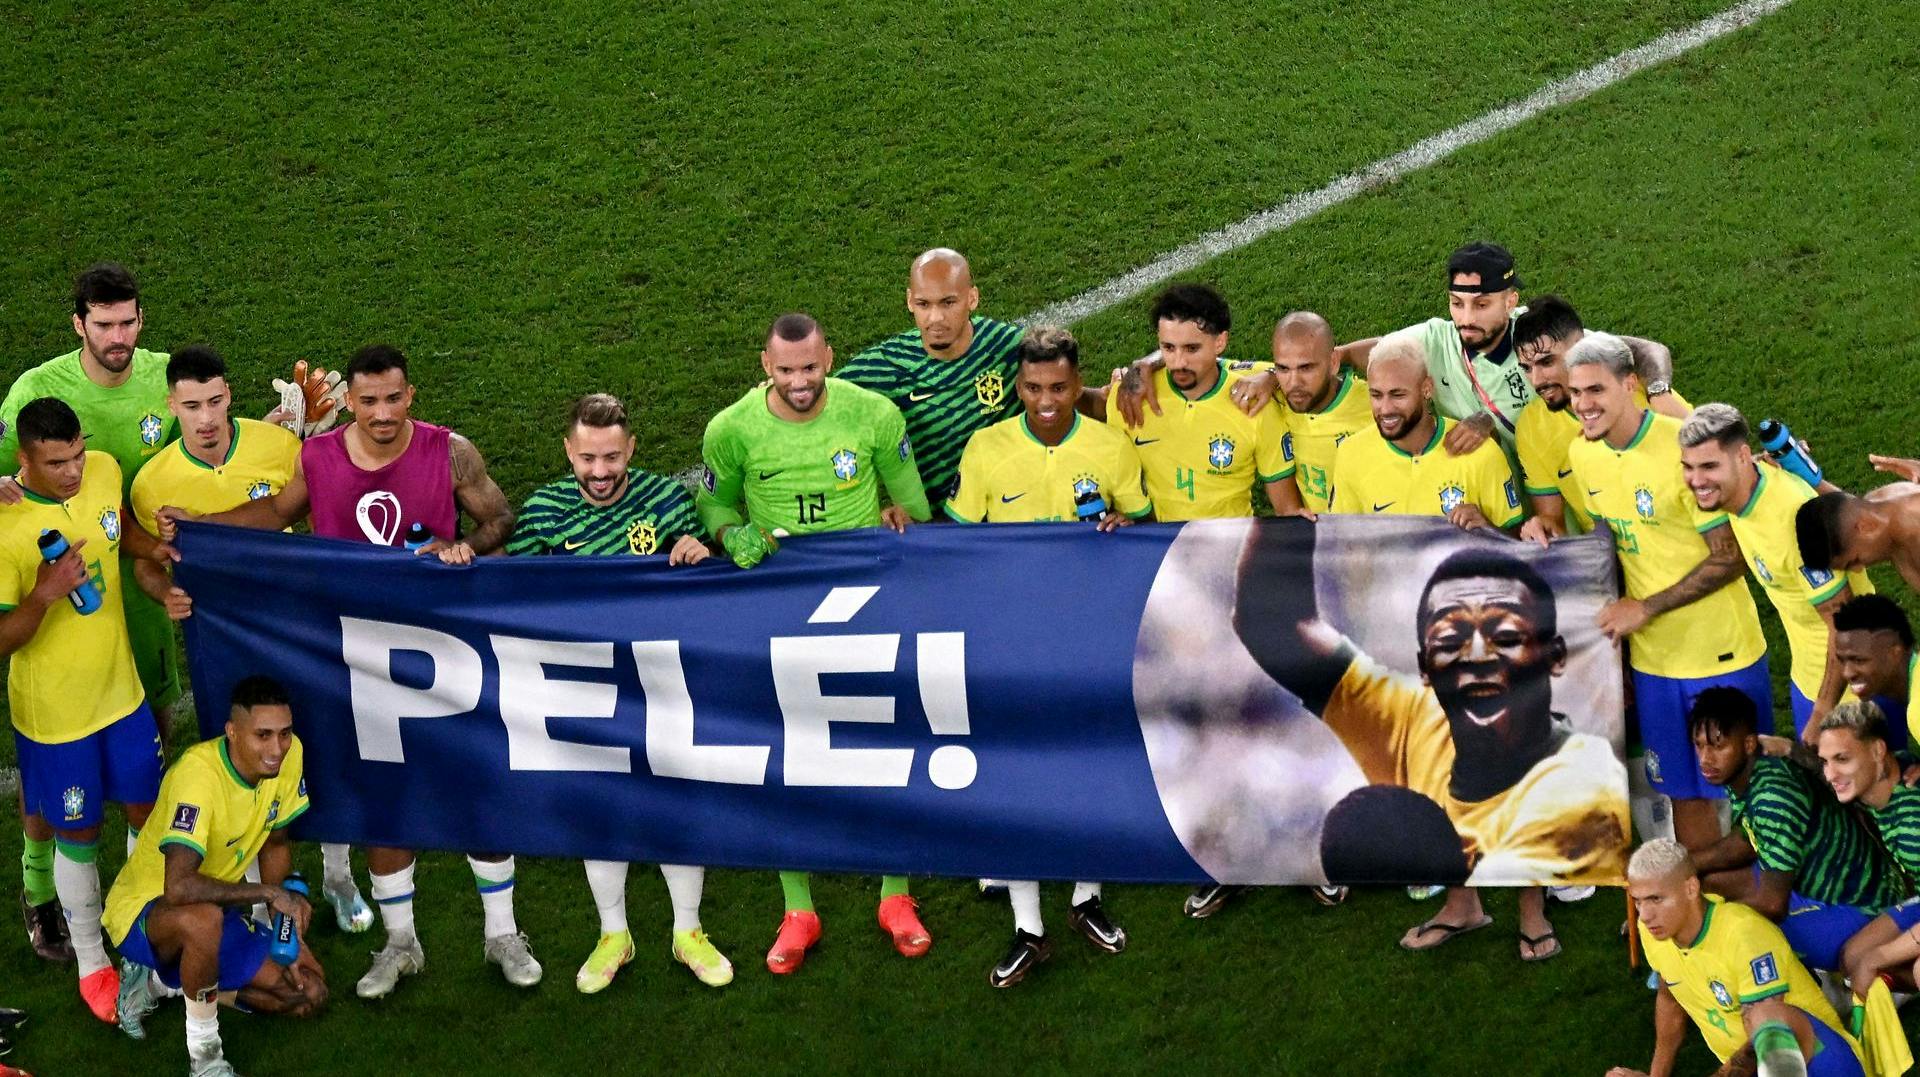 Spillere og fans hylder Pelé.